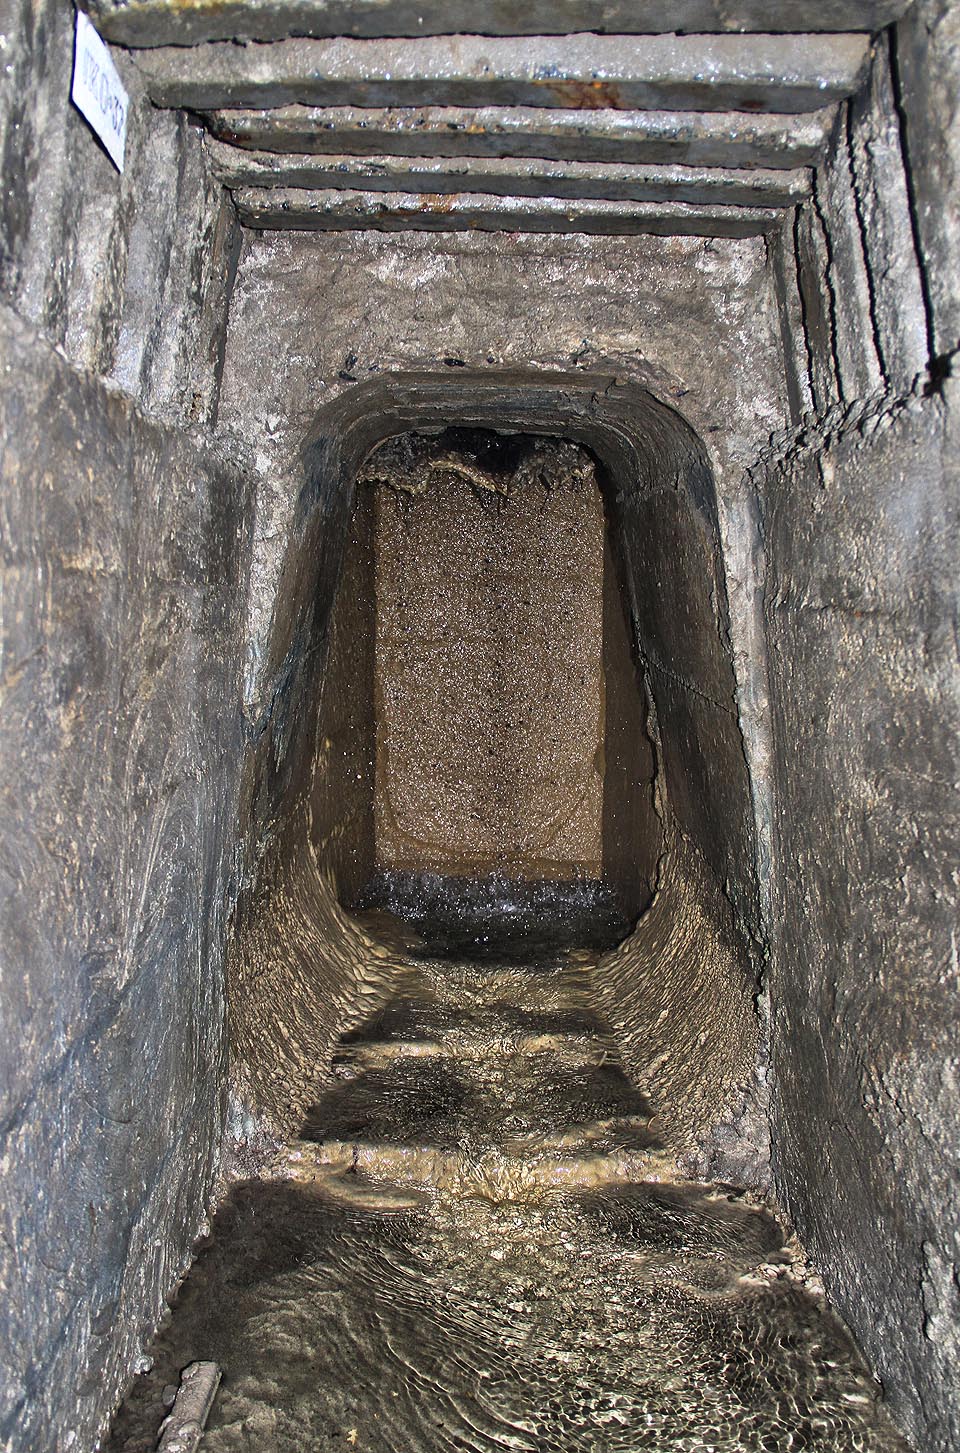 Jen o pár metrů výš se nachází úžasný labyrint drenážních chodeb pod starobylými budovami kláštera a jeskyněmi, ve kterých žili před tisíciletím poustevníci. Jako vždy má ale další cesta jeden háček…